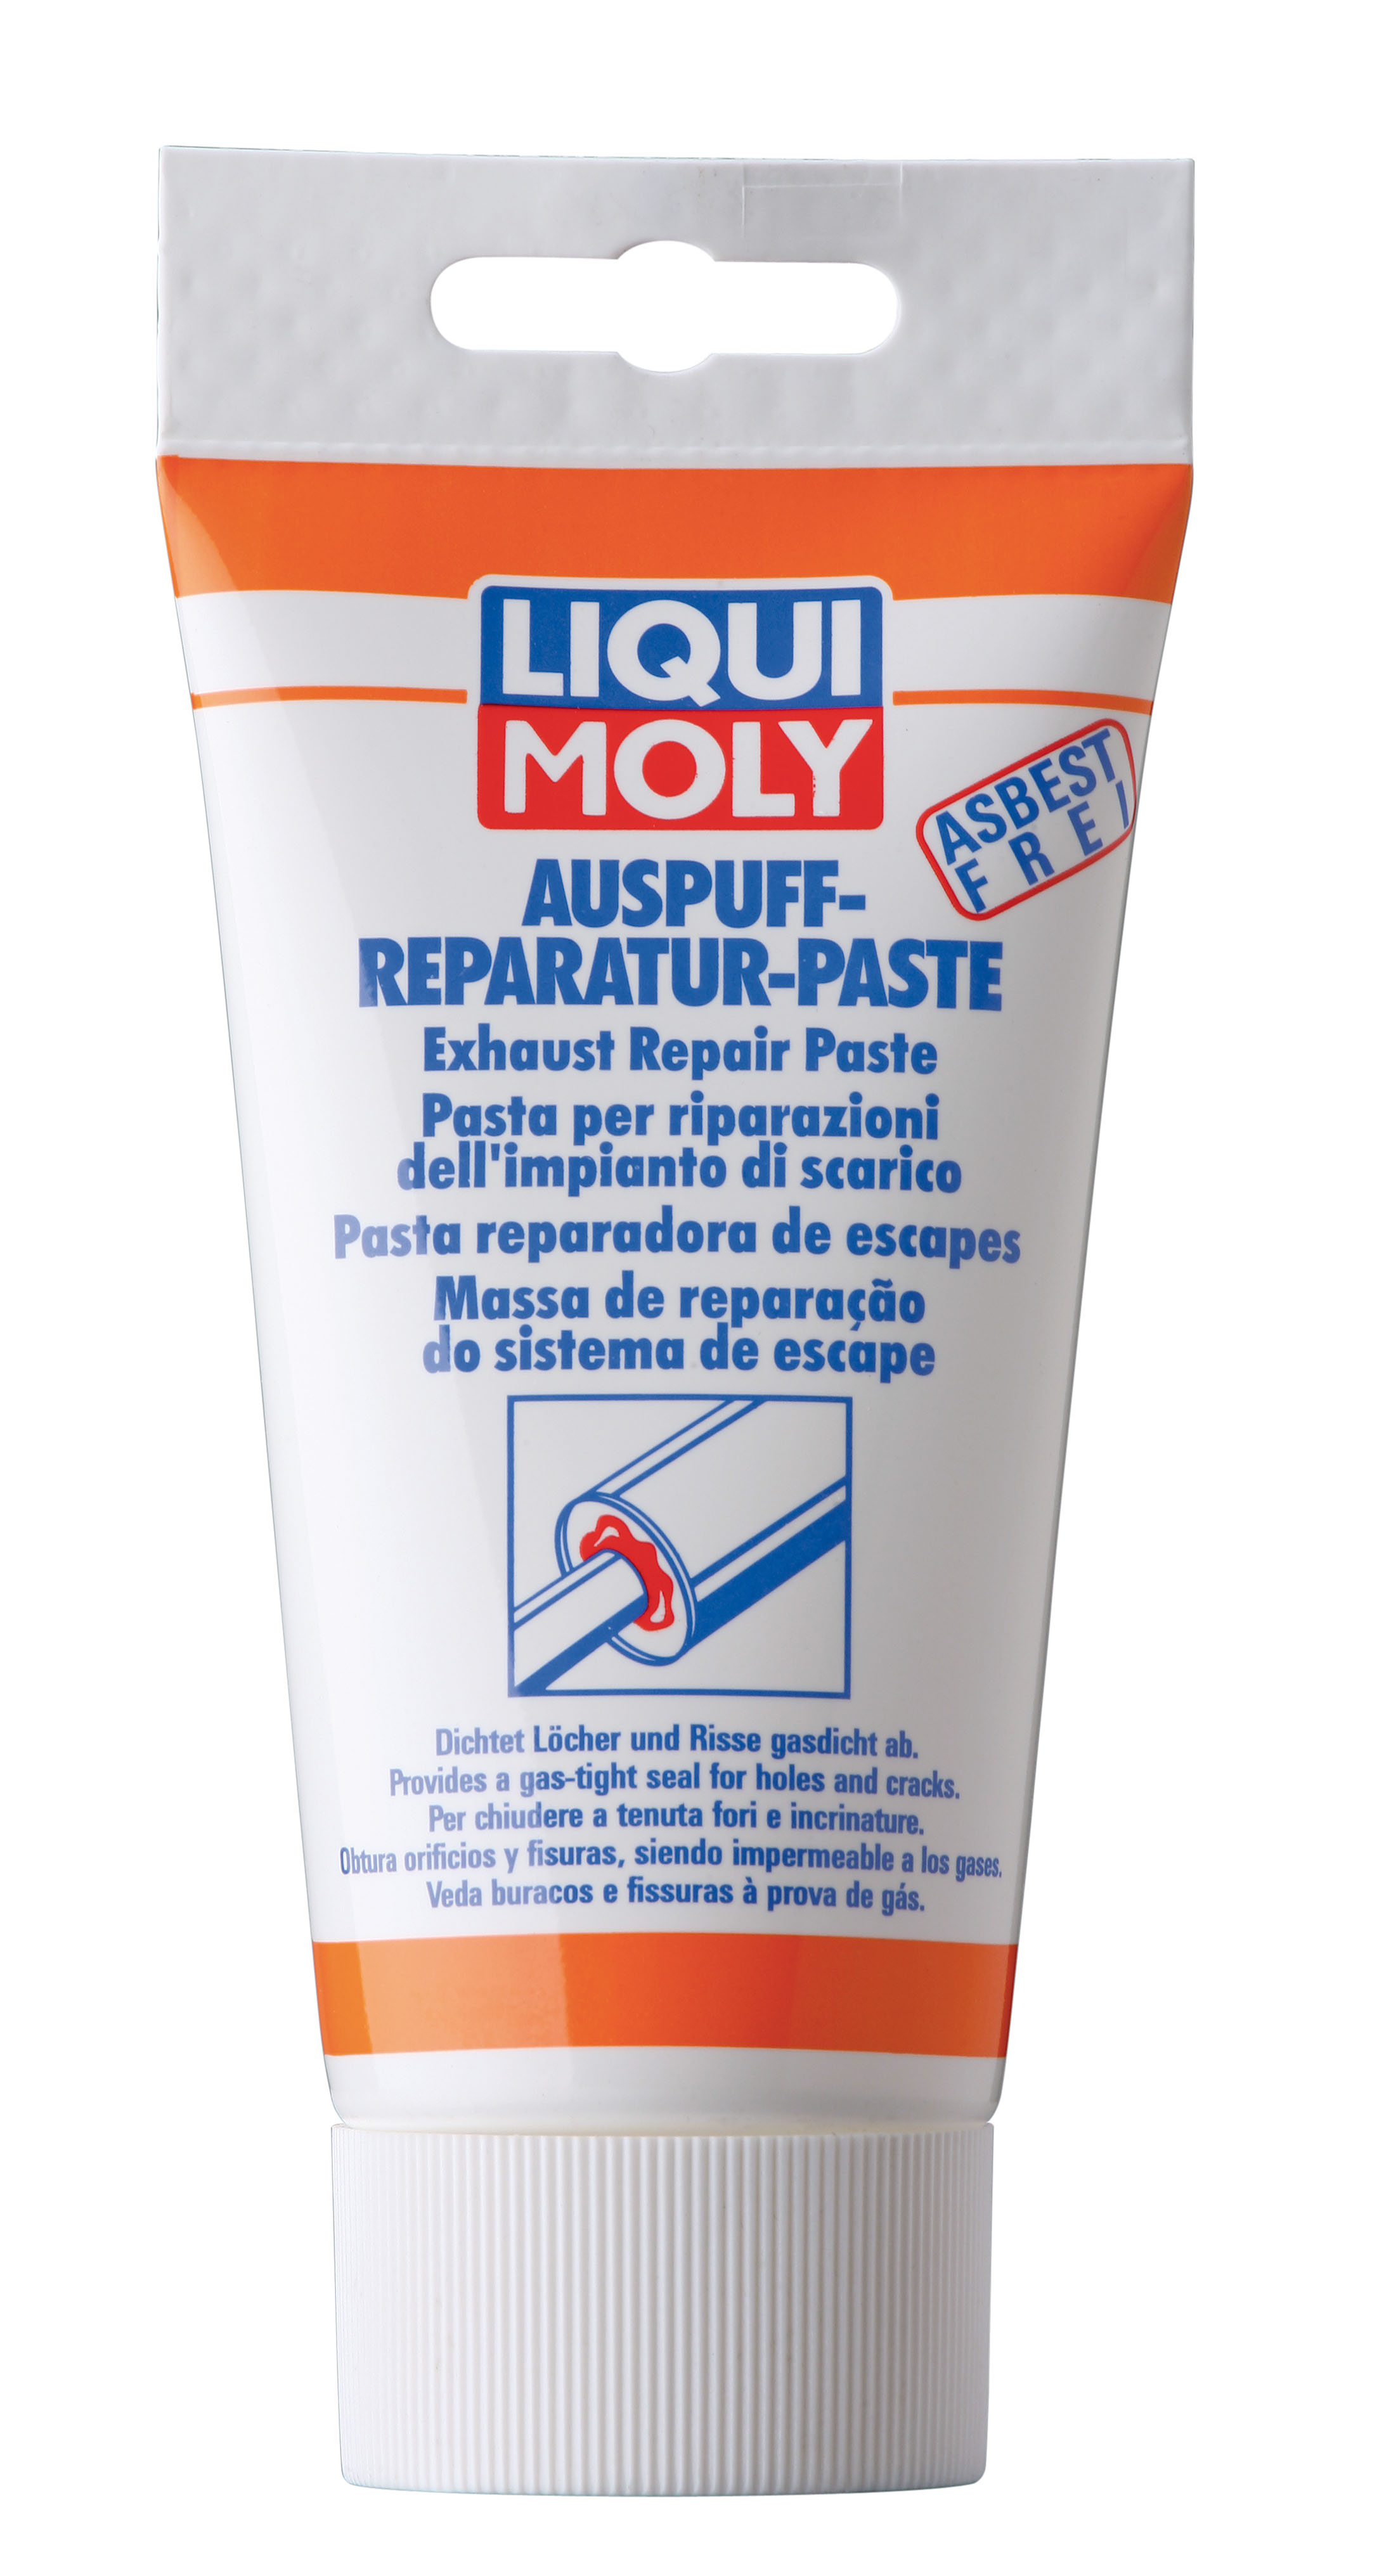 Liqui Moly 3340 Auspuff-Reparatur-Paste 200g